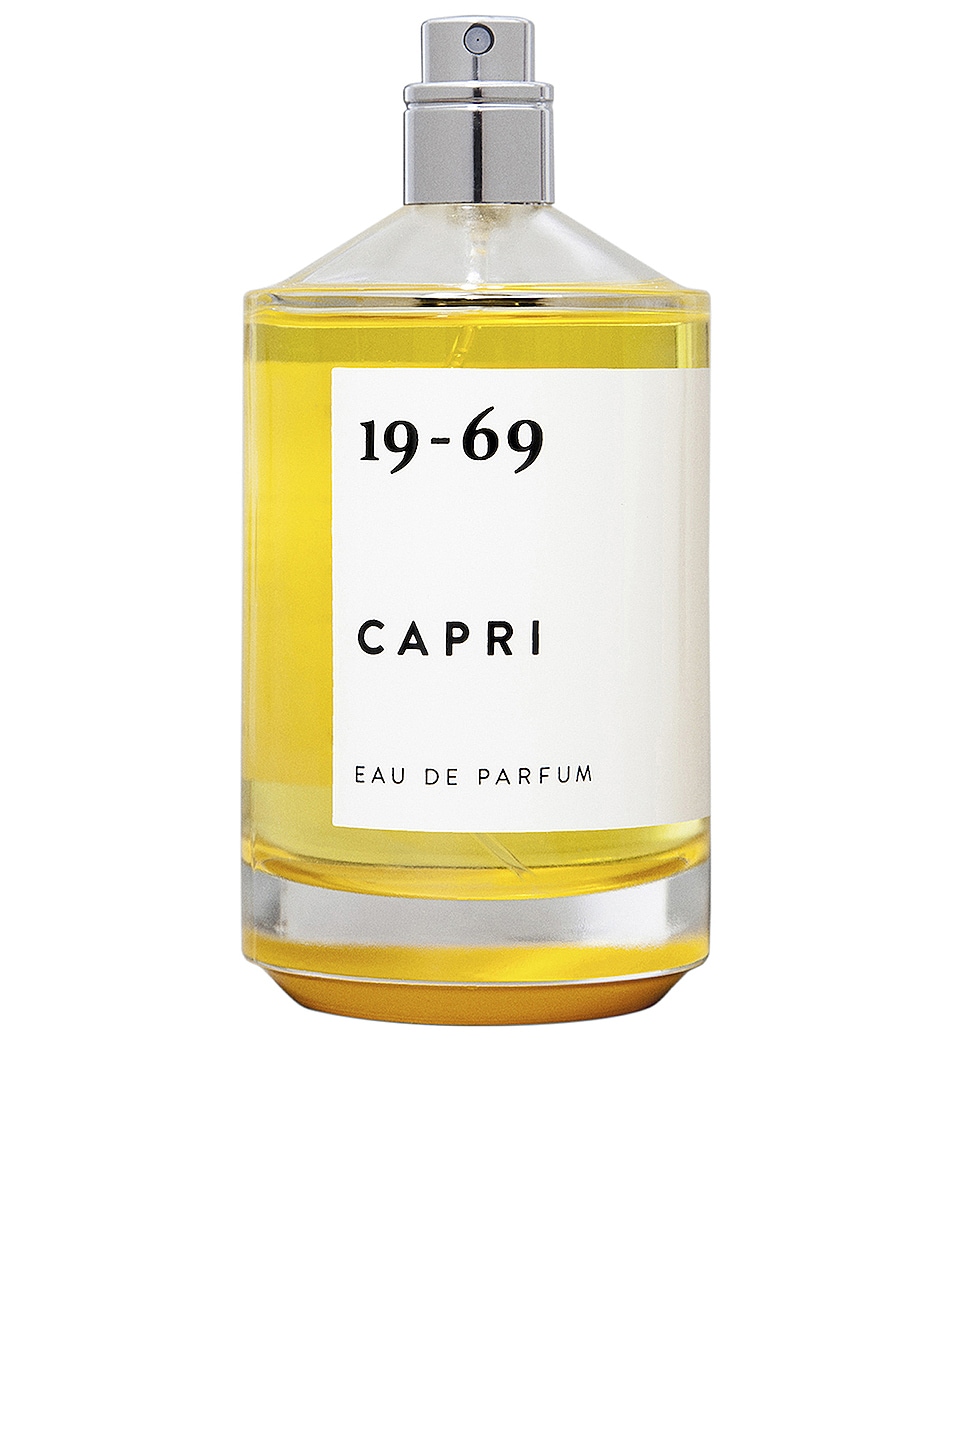 Image 1 of 19-69 Fragrance in Capri